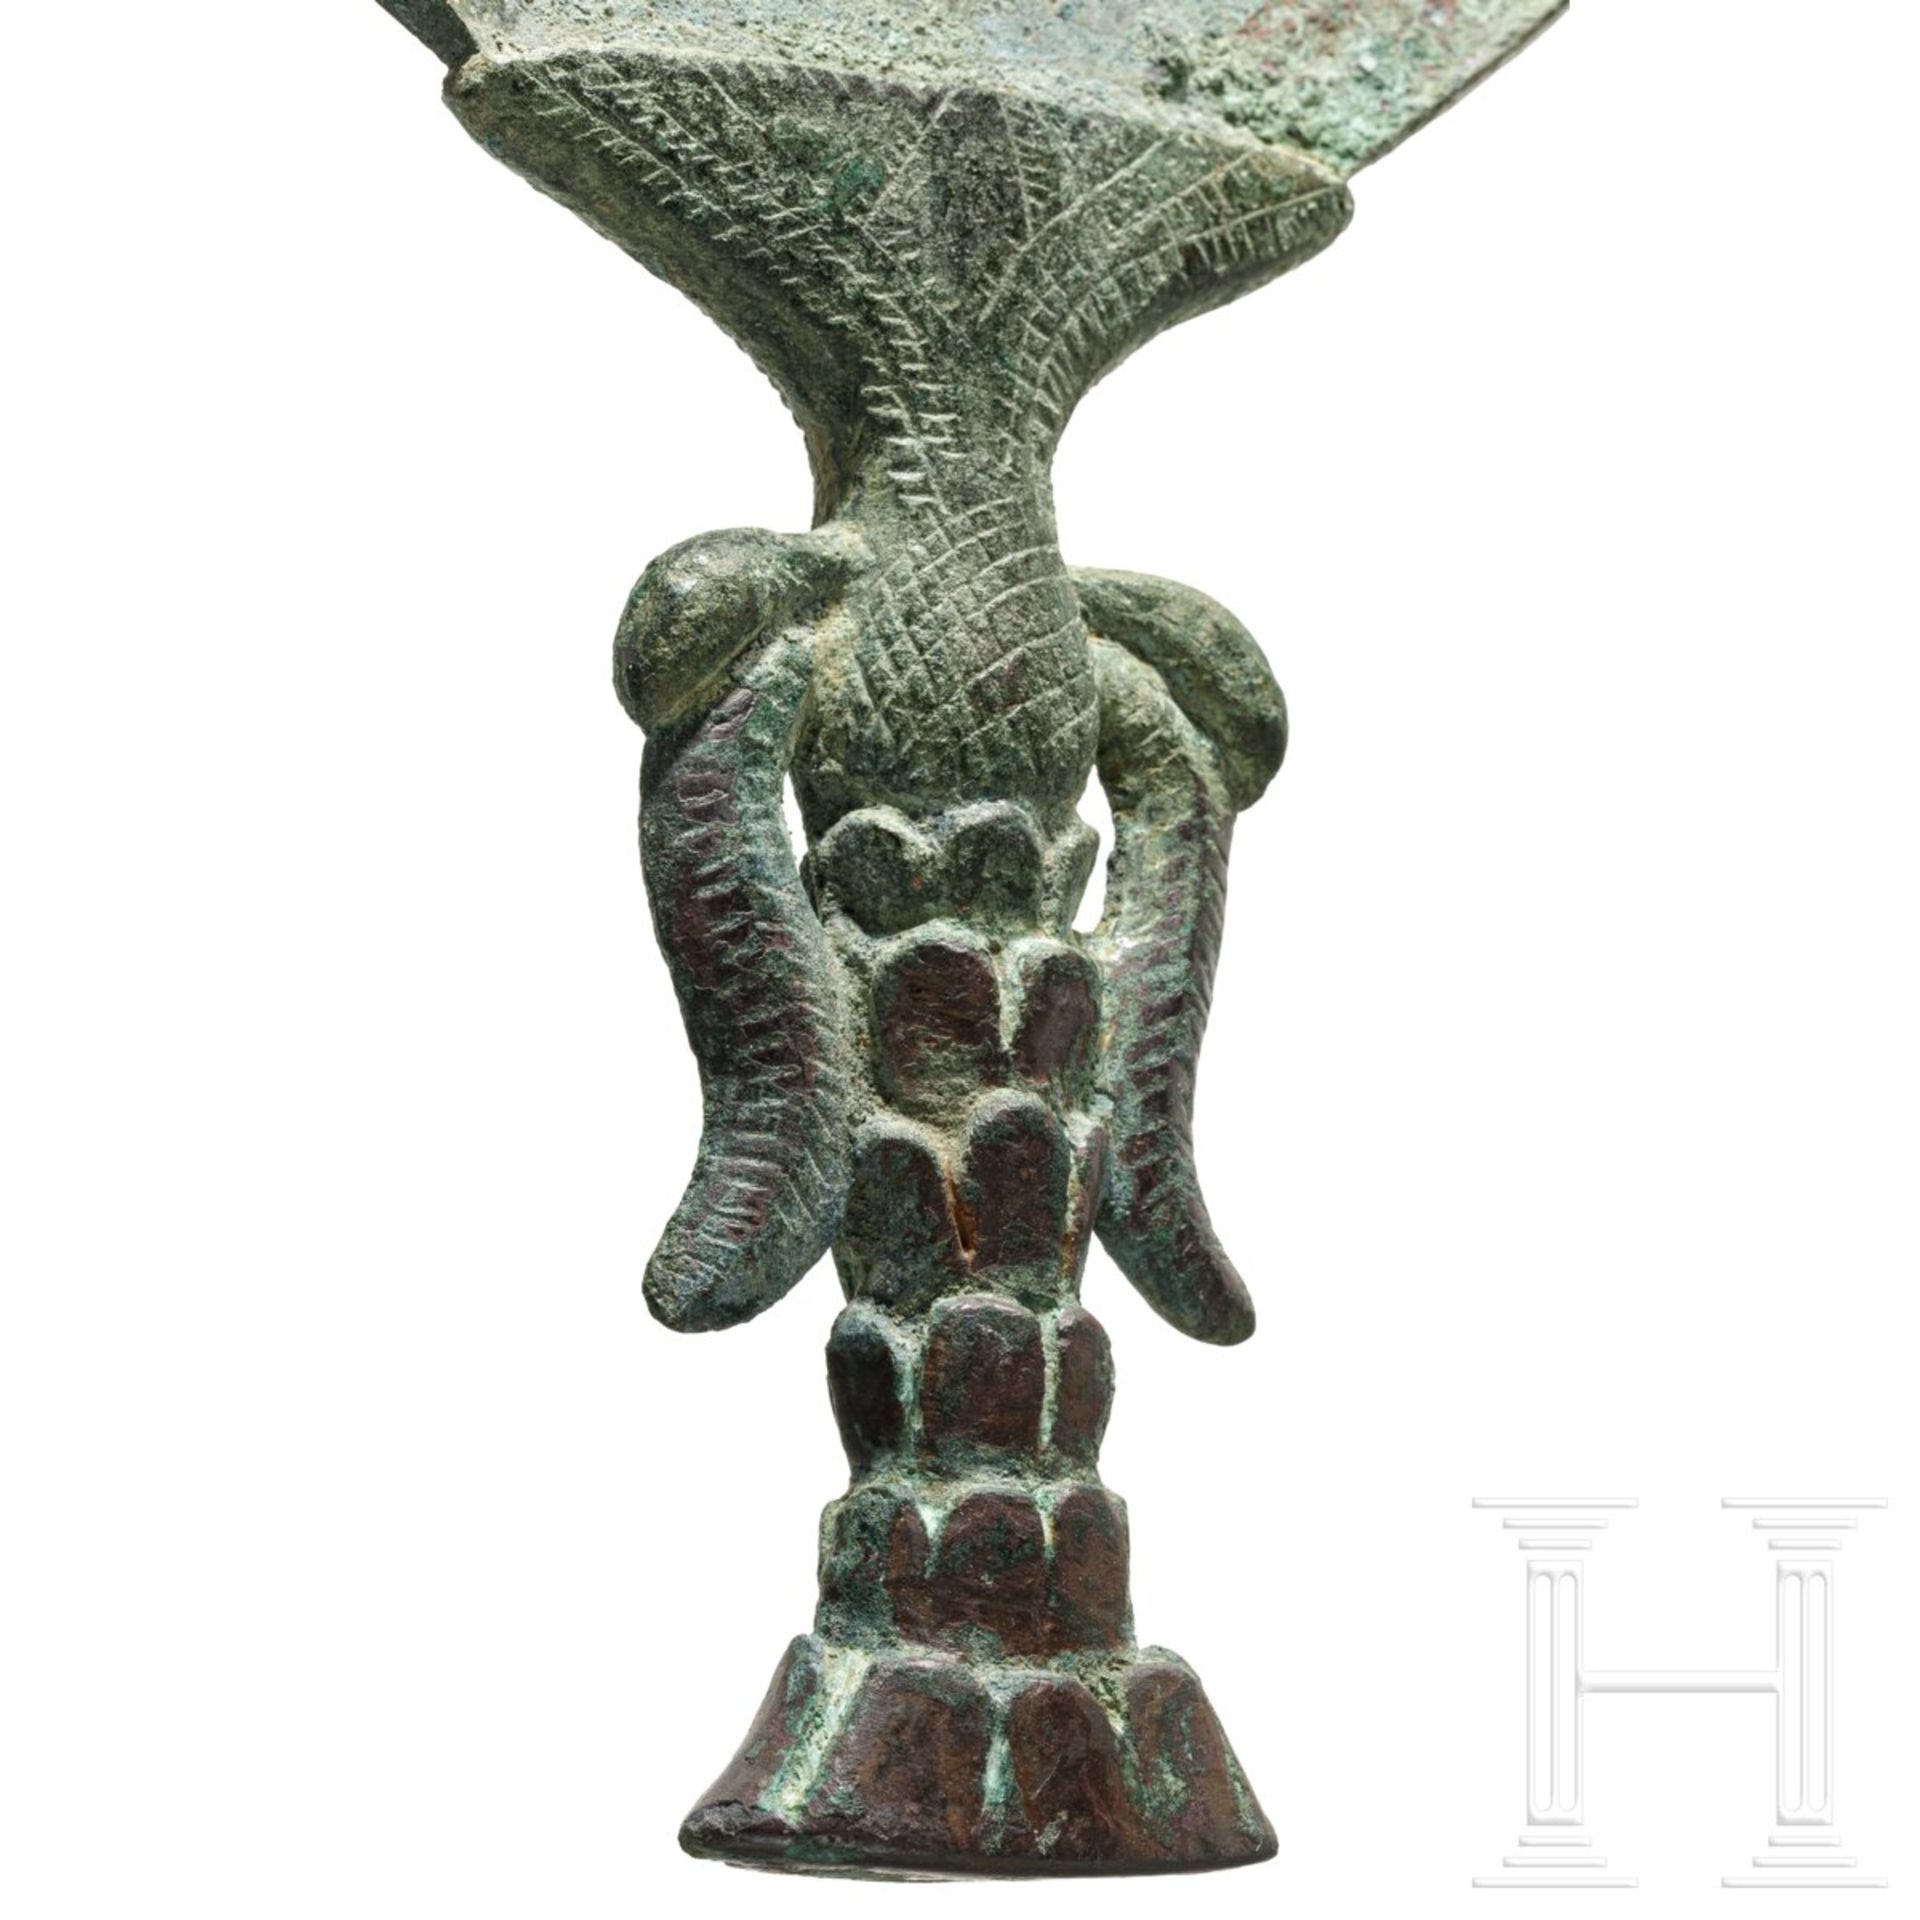 Gro§er Bronzespiegel, elamitisch-sumerisch, 2. Jtsd. v. Chr. - Bild 5 aus 5